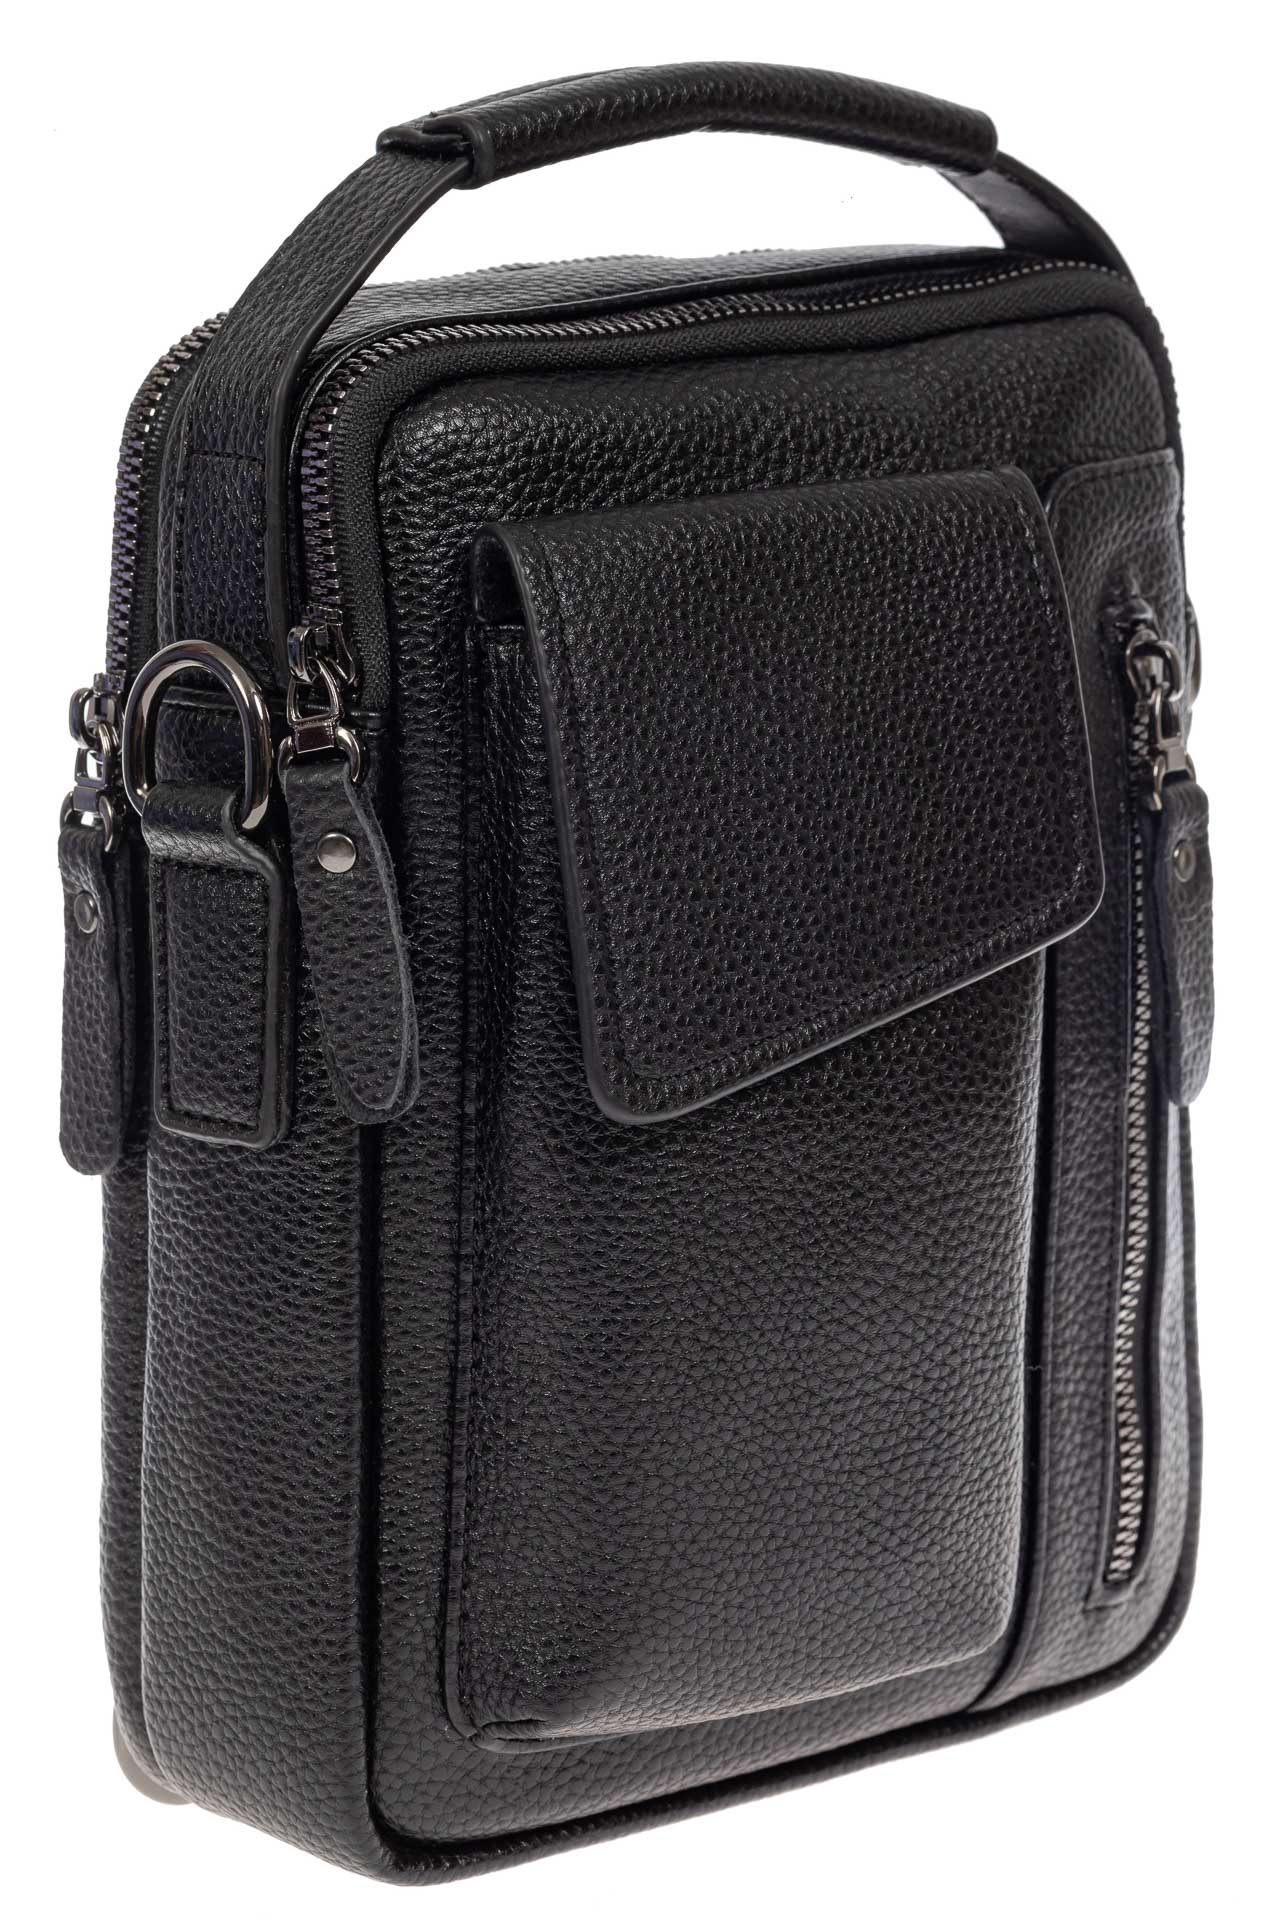 Мужская сумка-слинг из фактурной натуральной кожи, цвет чёрный